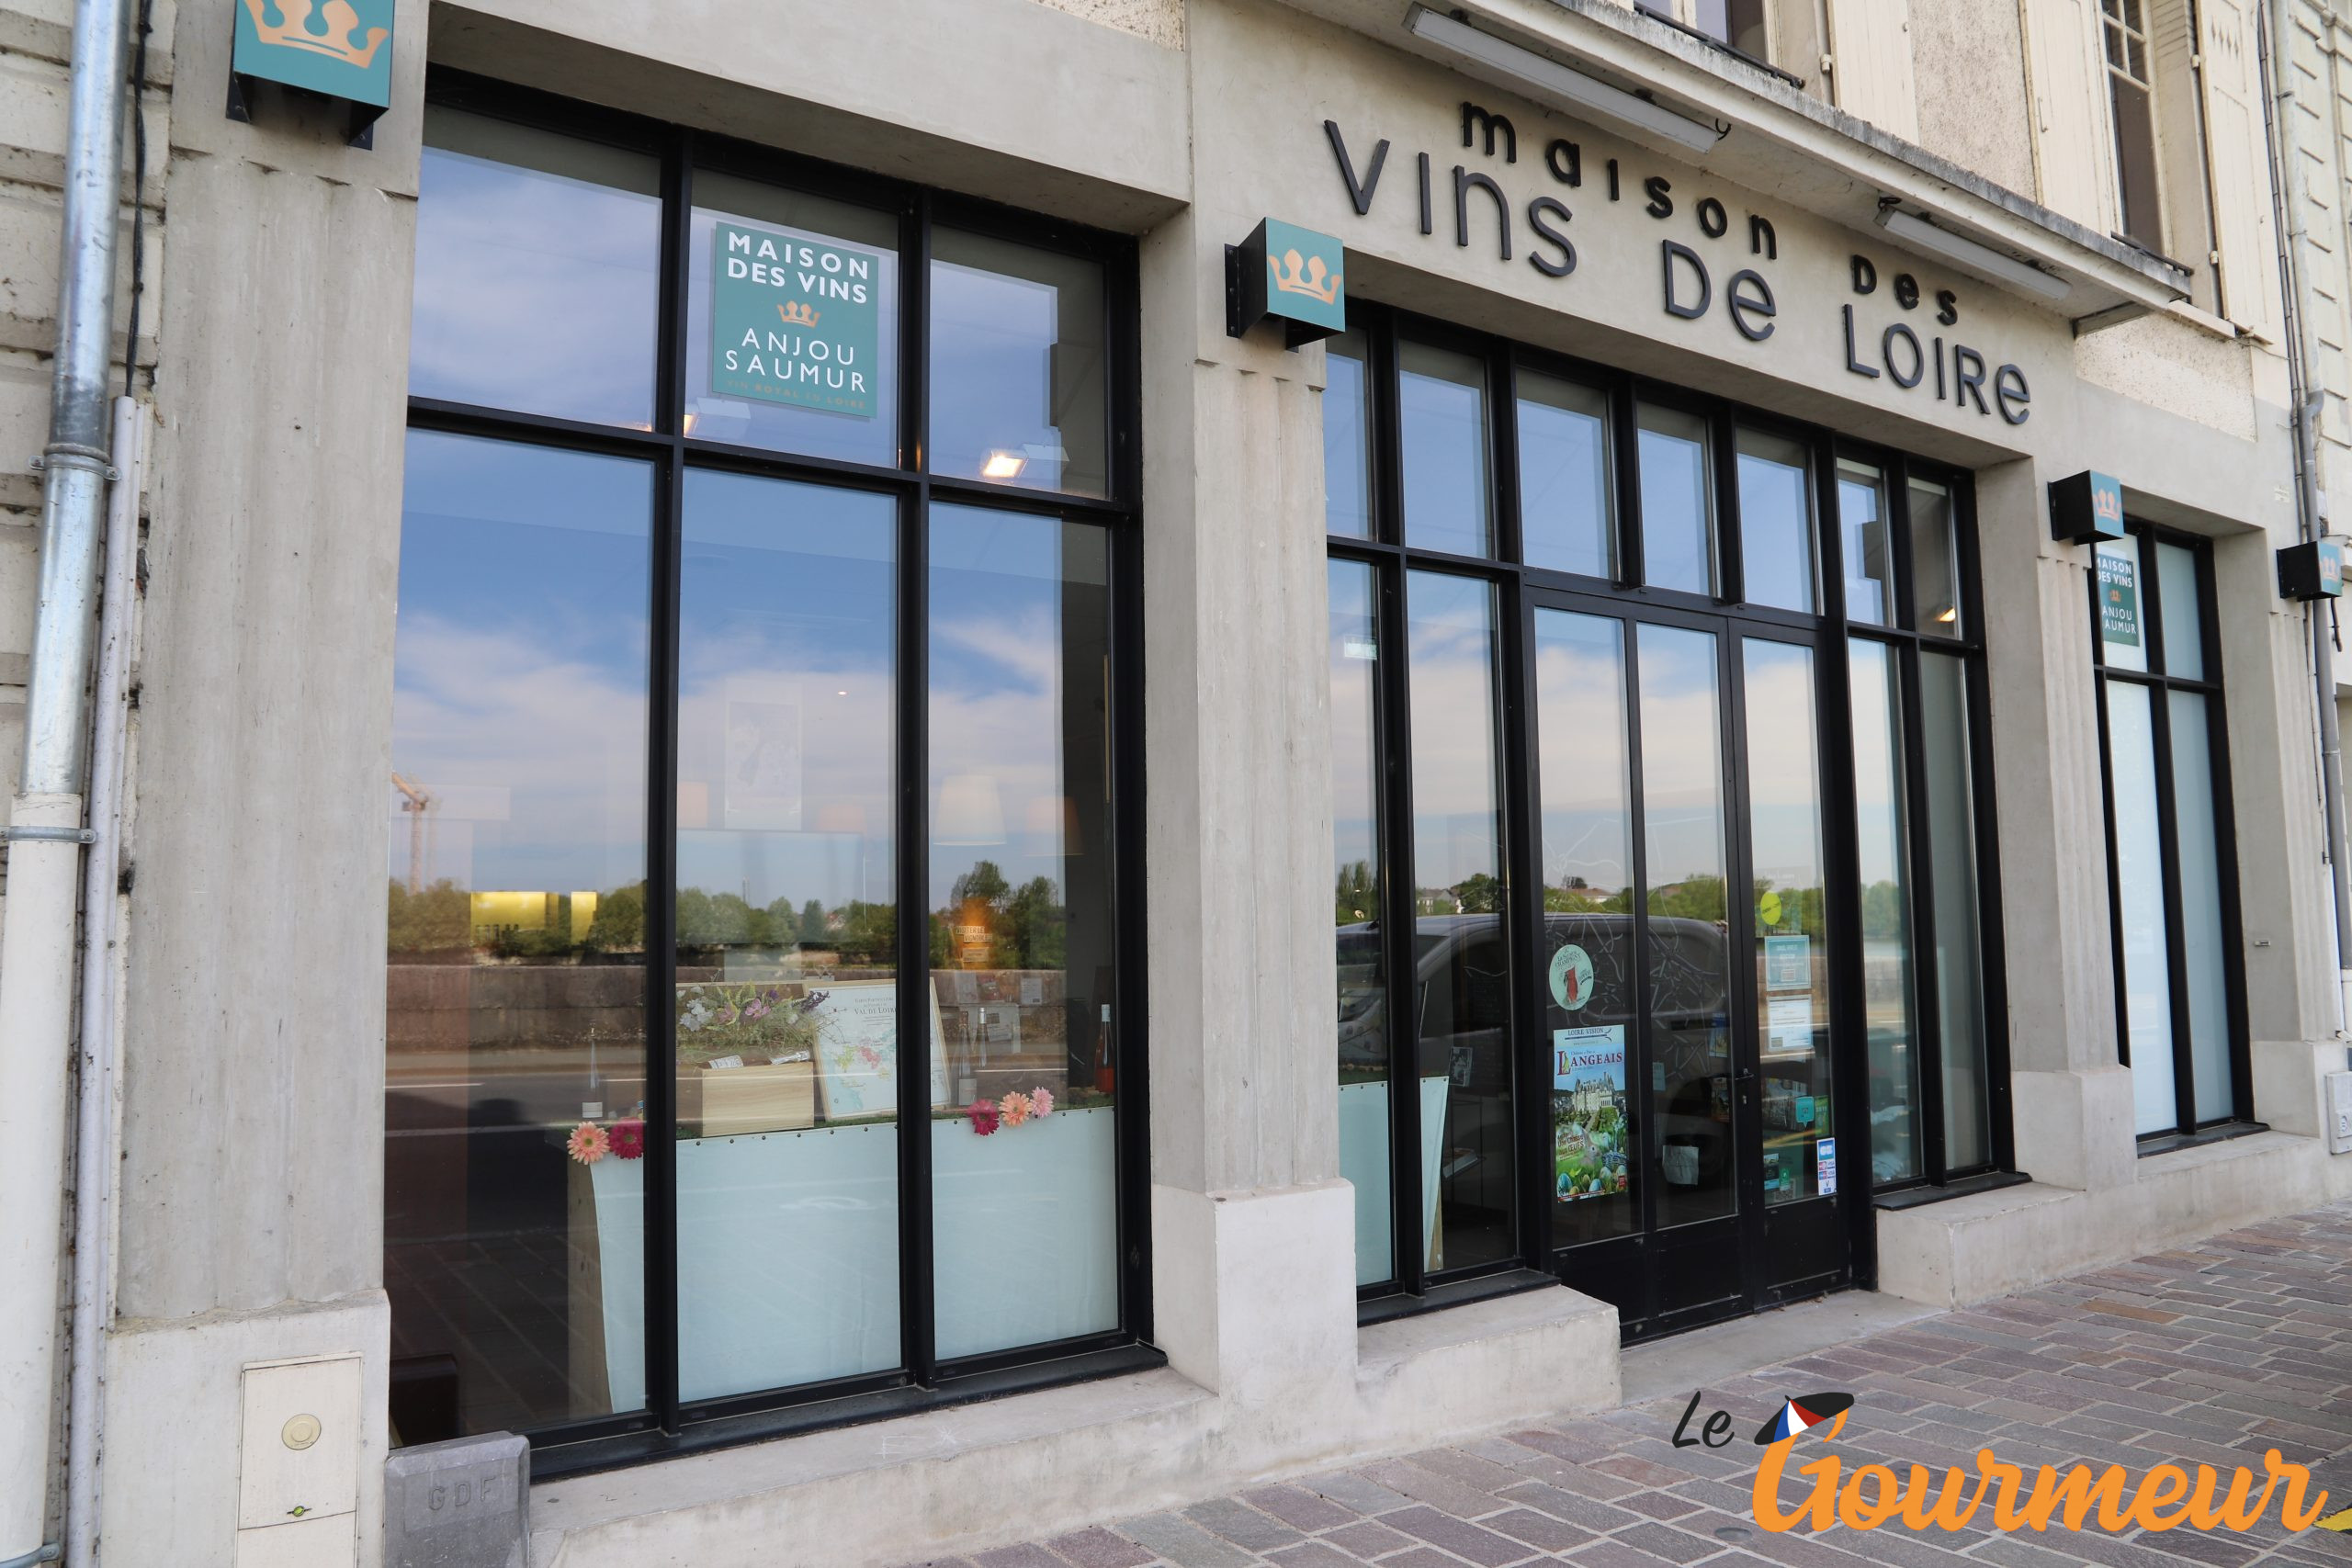 Maison des vins de Loire